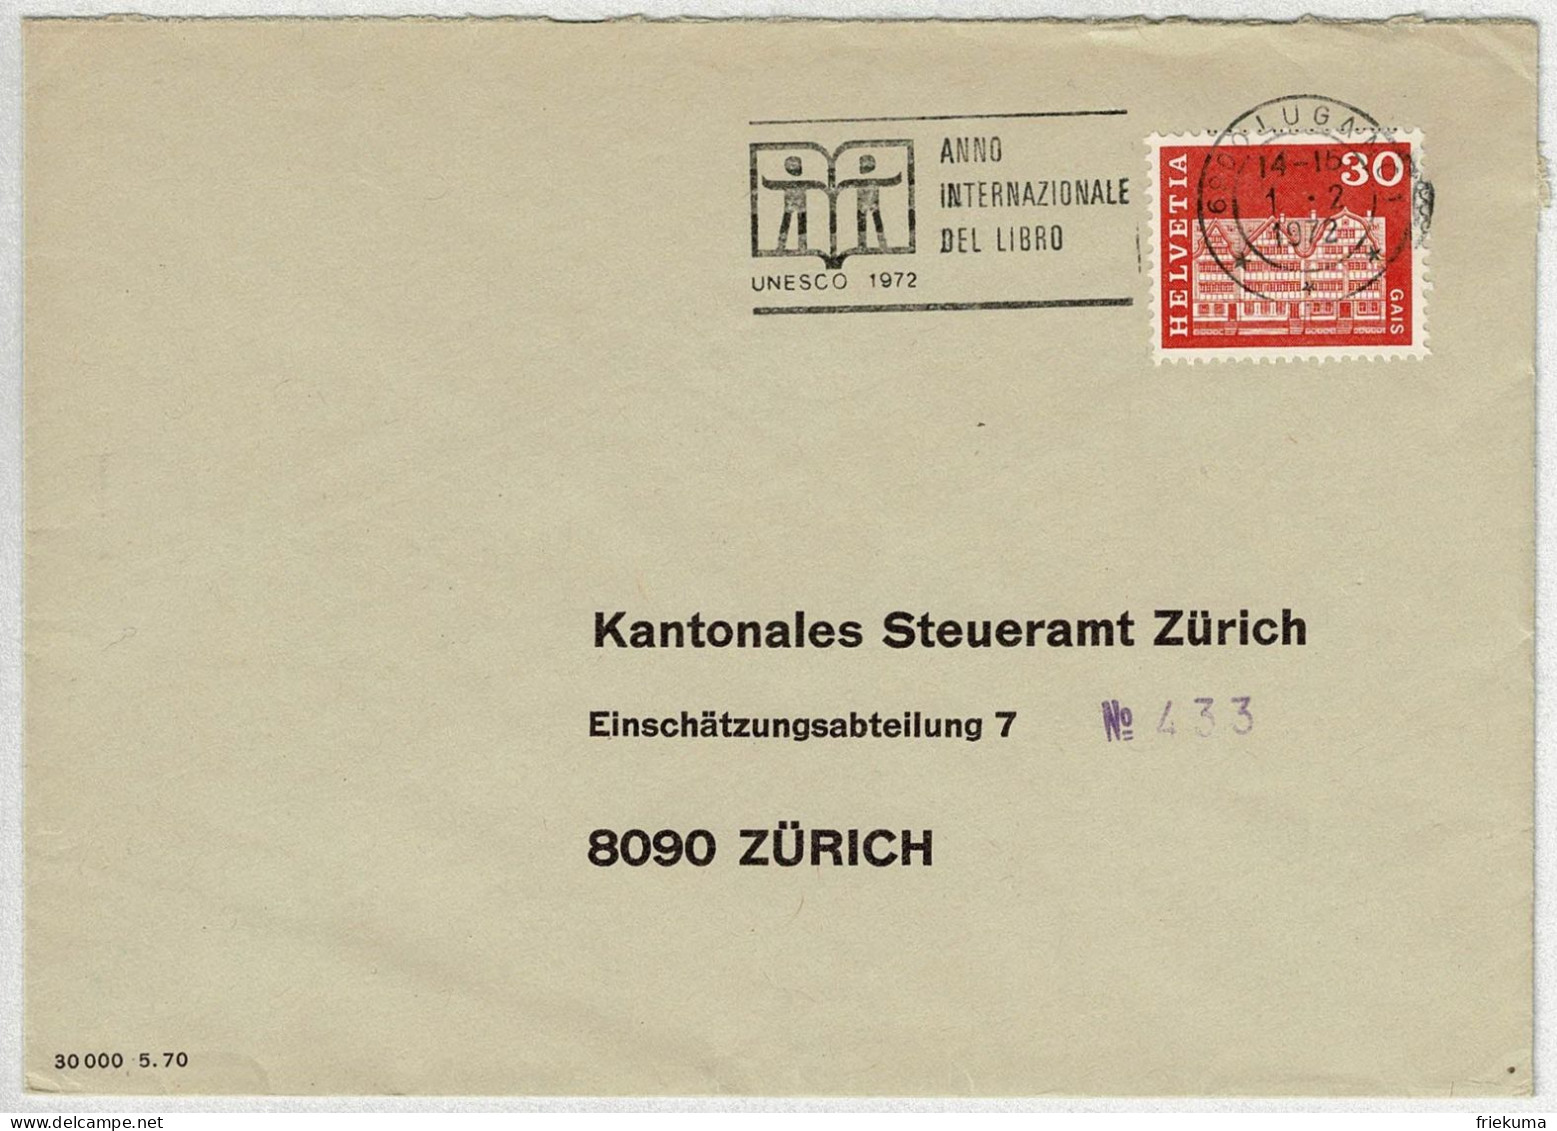 Schweiz / Helvetia 1972, Brief Lugano - Zürich, Anno Del Libro / Jahr Des Buches / Year Of The Book, Unesco - UNESCO